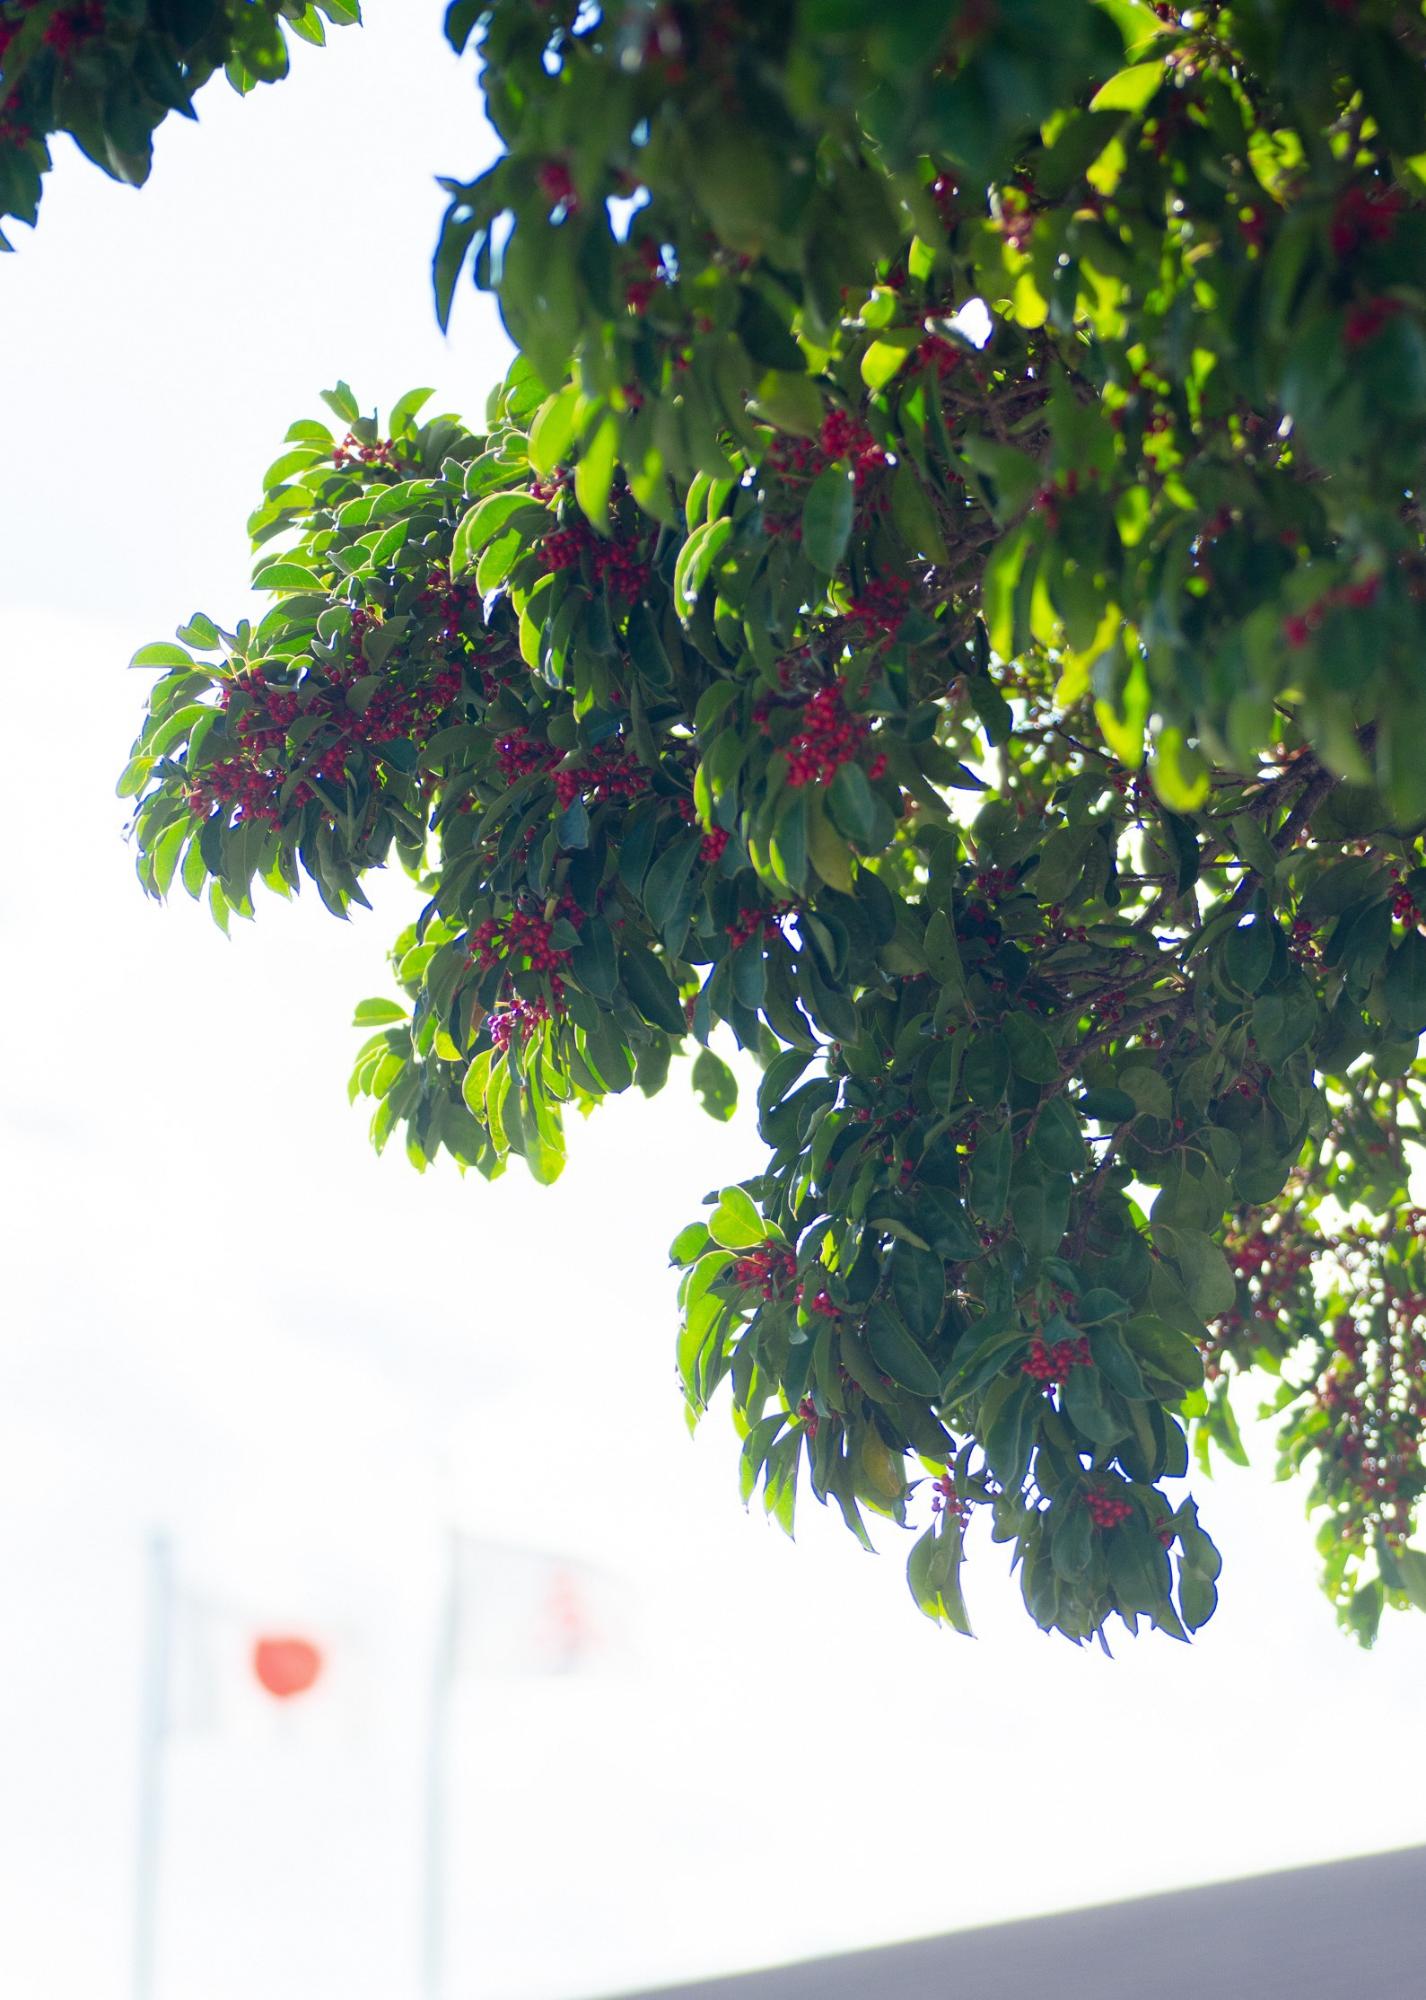 相川公民館の敷地内にある、真っ赤な小さい実をつけた青々とした木の後ろに、相川公民館の日の丸国旗がぼんやりと映っている。